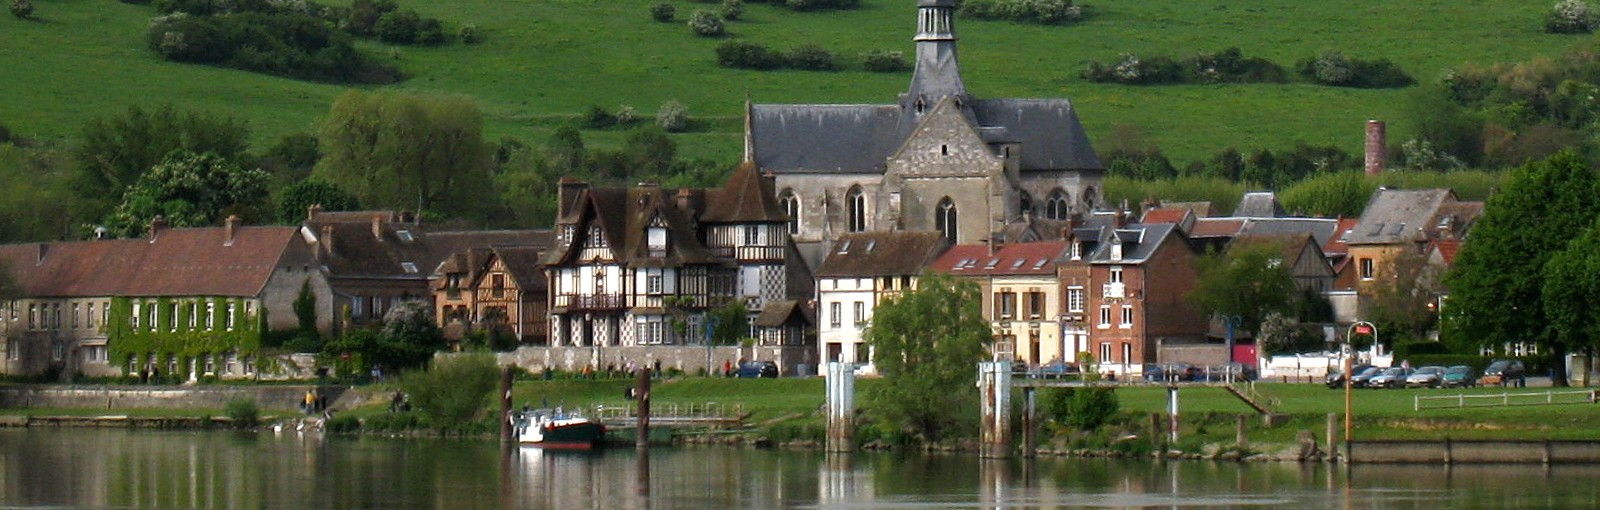 Les Andelys - village along the Seine